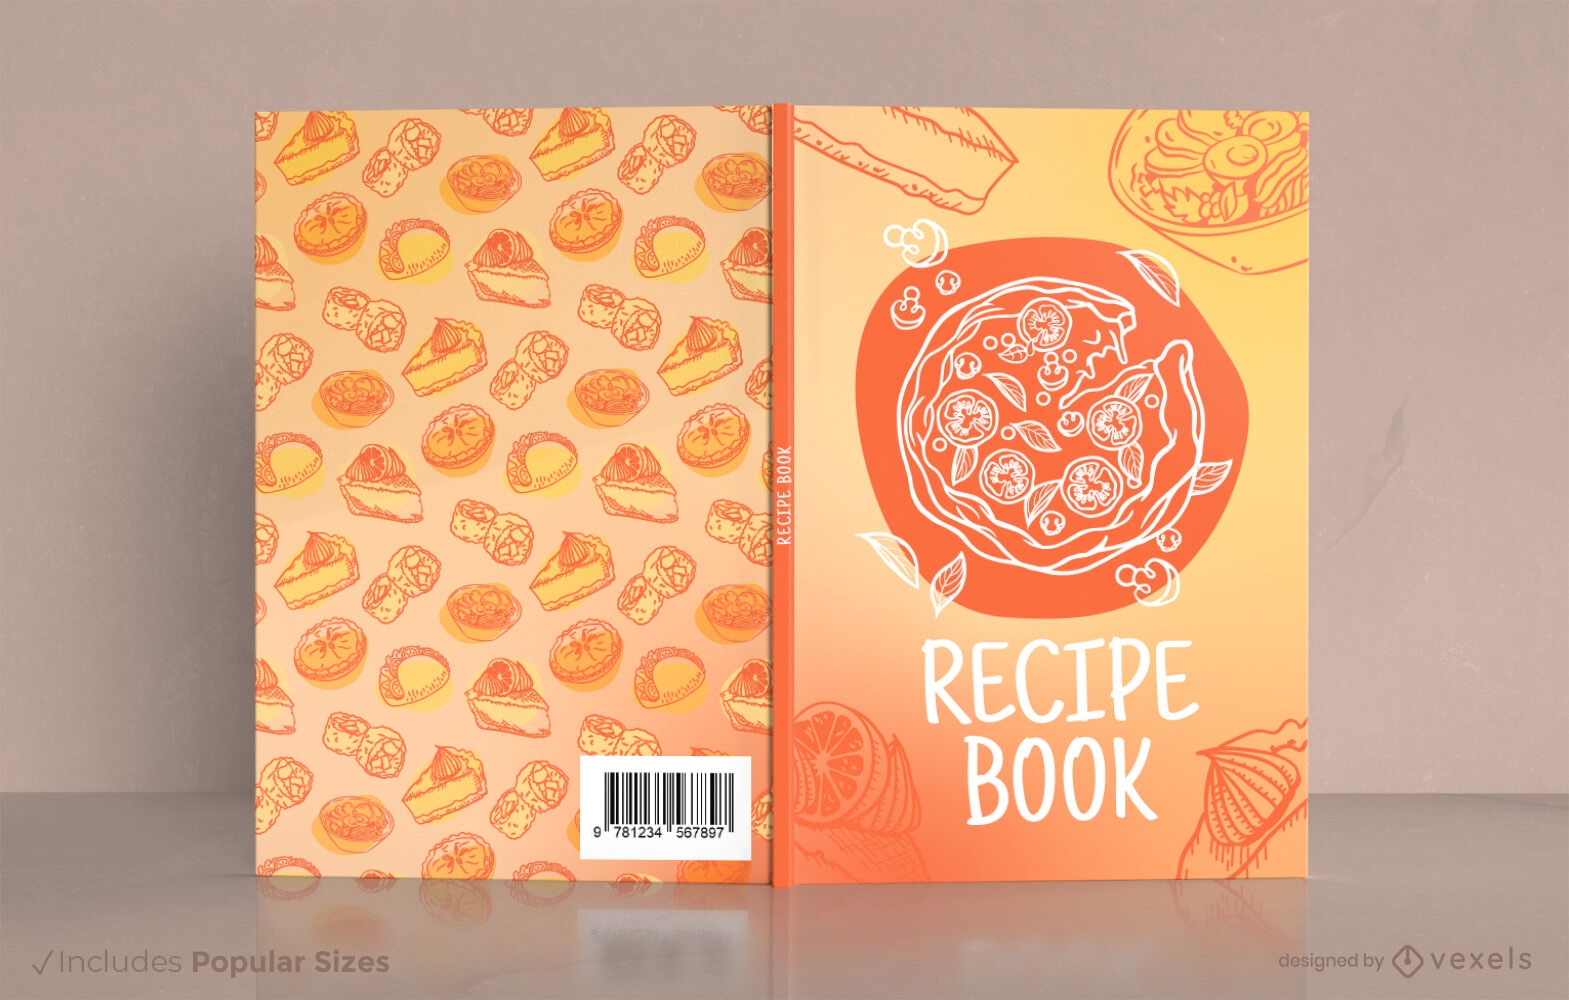 https://images.vexels.com/content/328077/preview/recipe-book-cover-design-kdp-0172c5.png